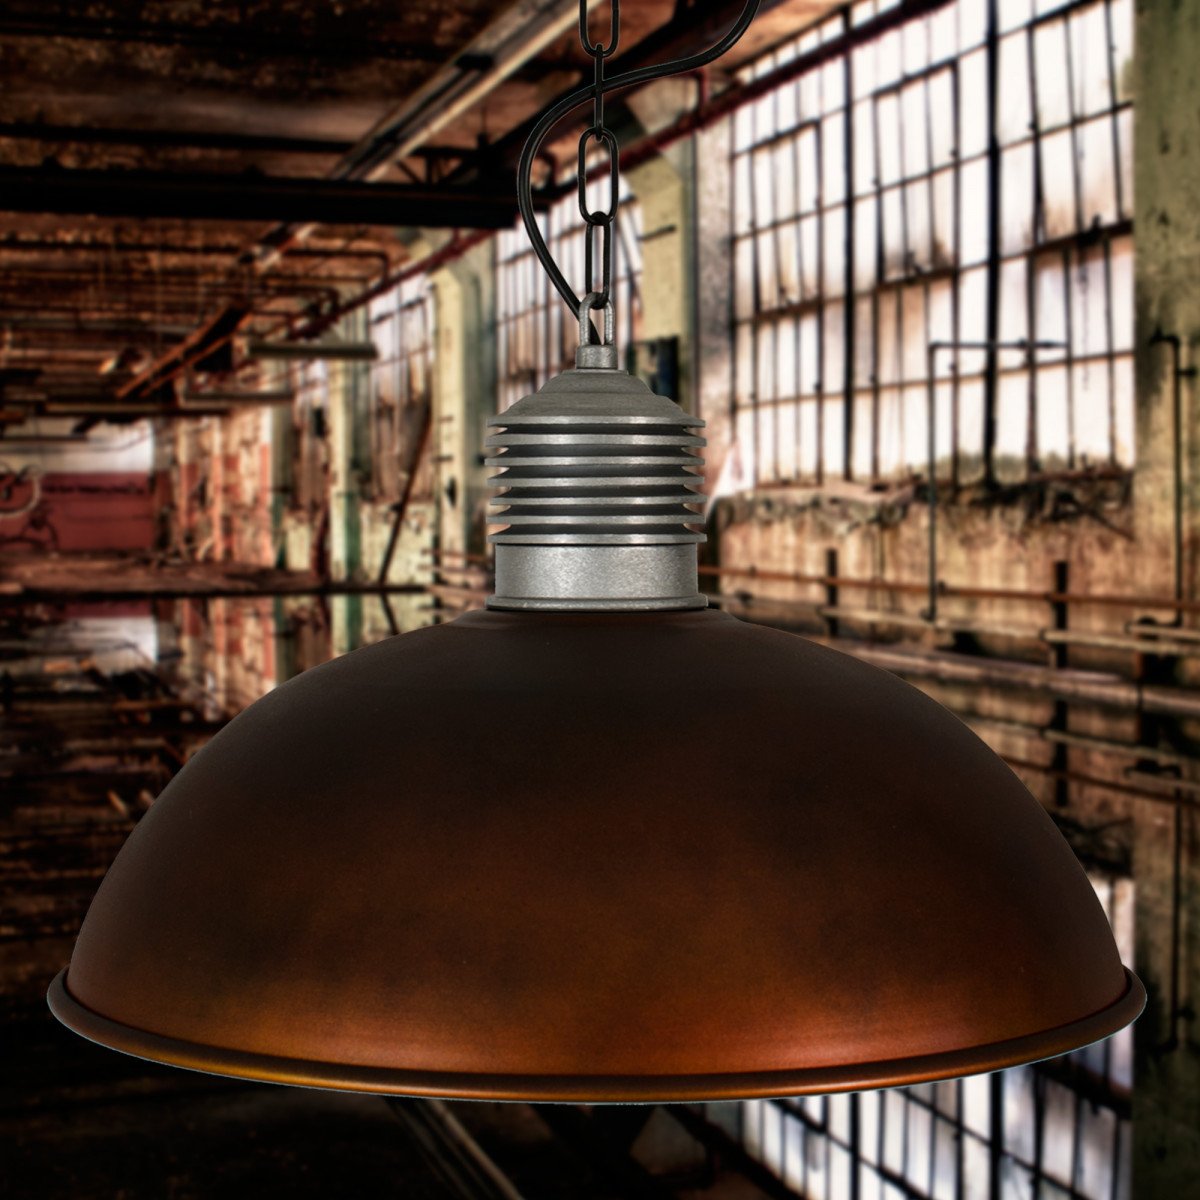 Hanglamp Industrieel II Copper Look